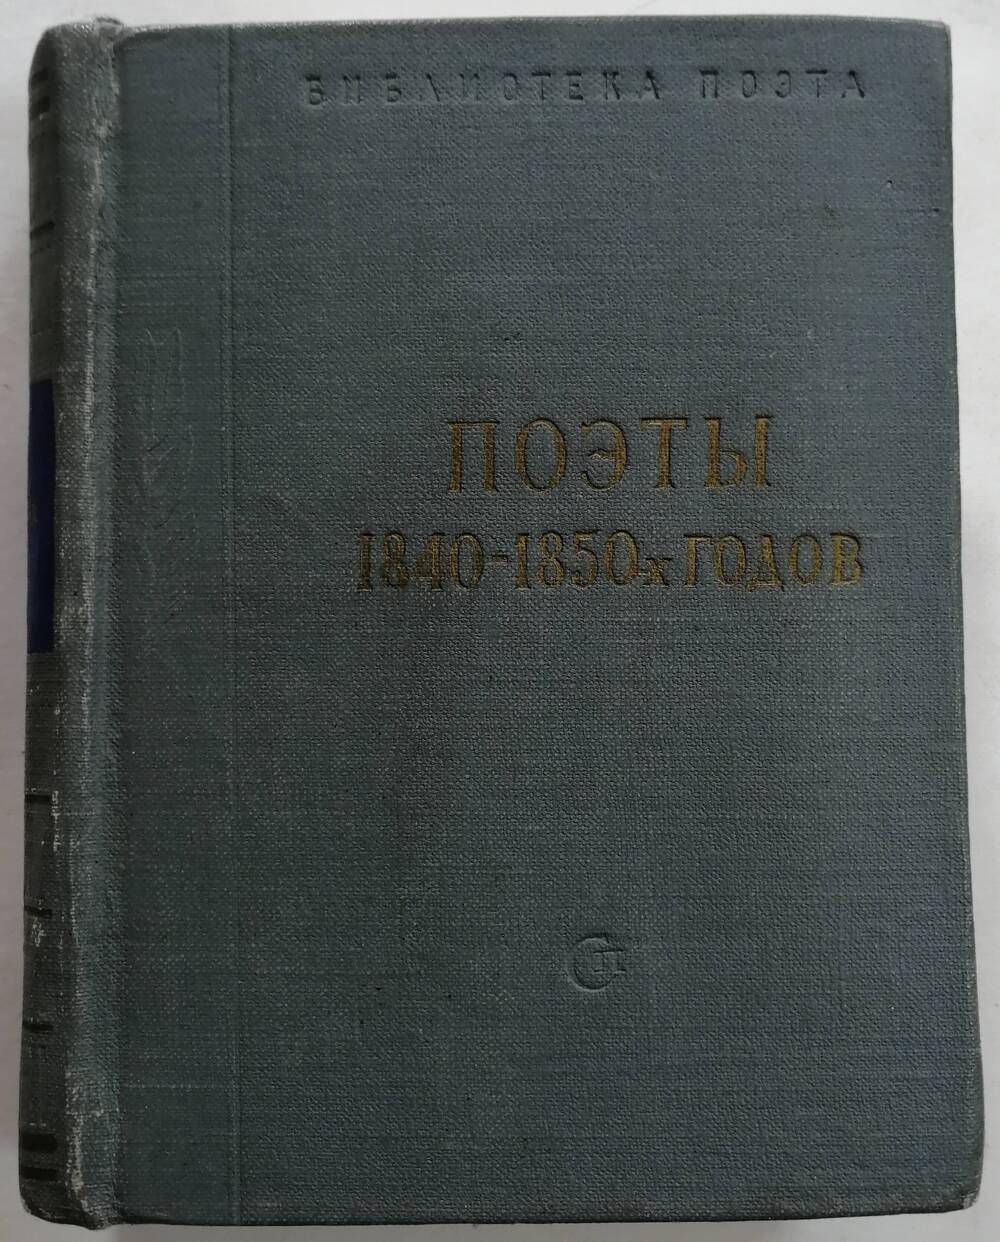 Поэты 1840 - 1850-х годов. Библиотека поэта, основана М. Горьким. Малая серия. Издание третье.